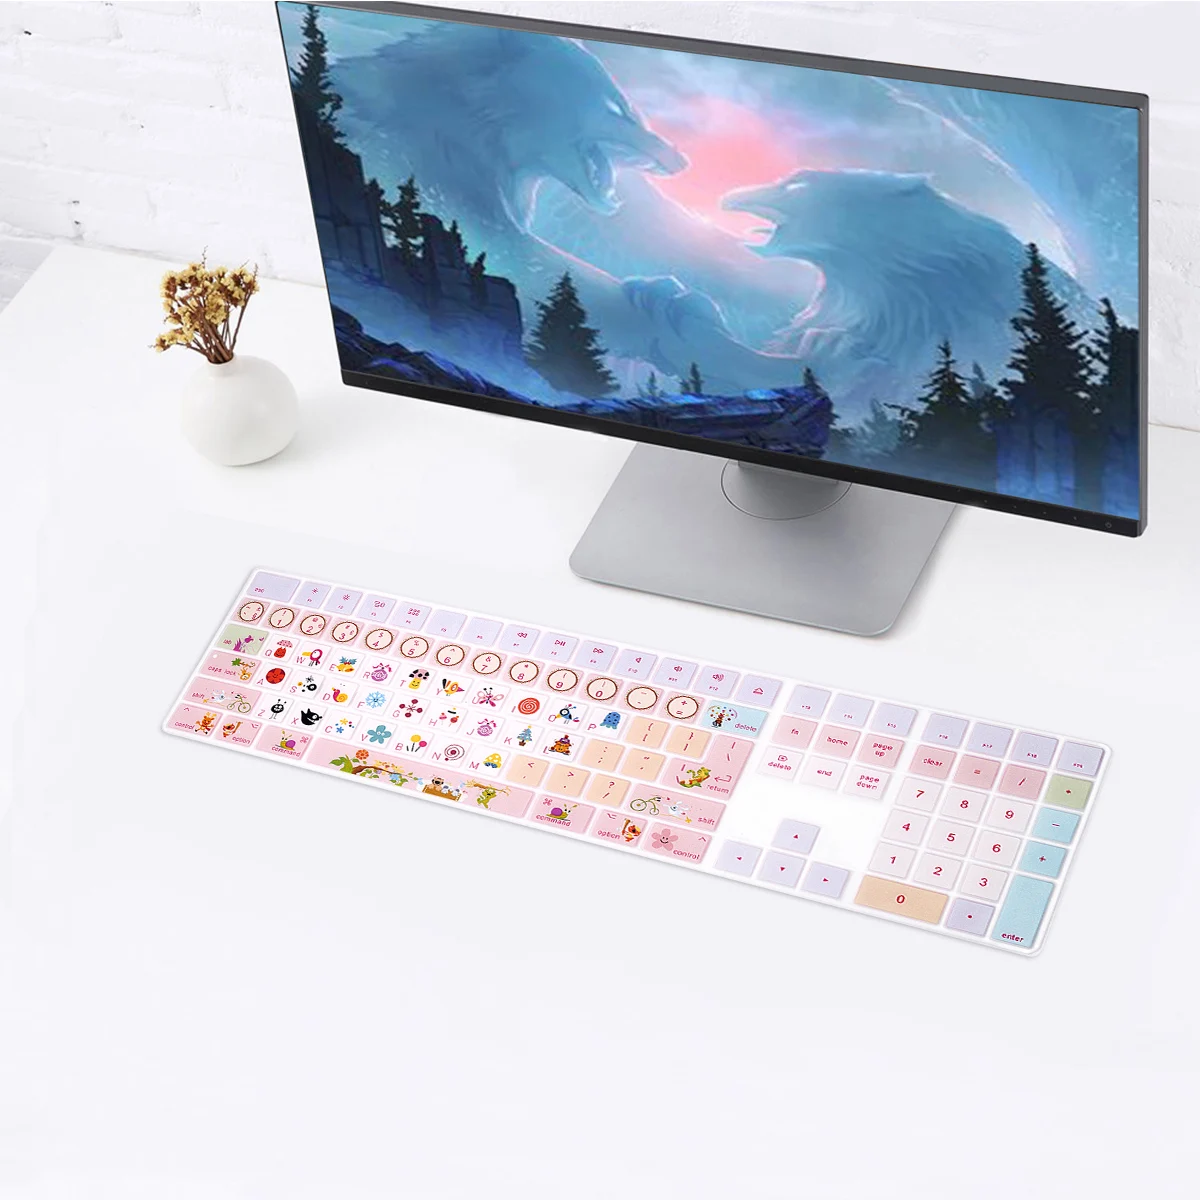 

Симпатичная накладка на клавиатуру с принтом для Apple iMac, беспроводная Волшебная клавиатура с цифровой клавиатурой MQ052LL/A A1843 2017 2018, дизайн ЕС, США